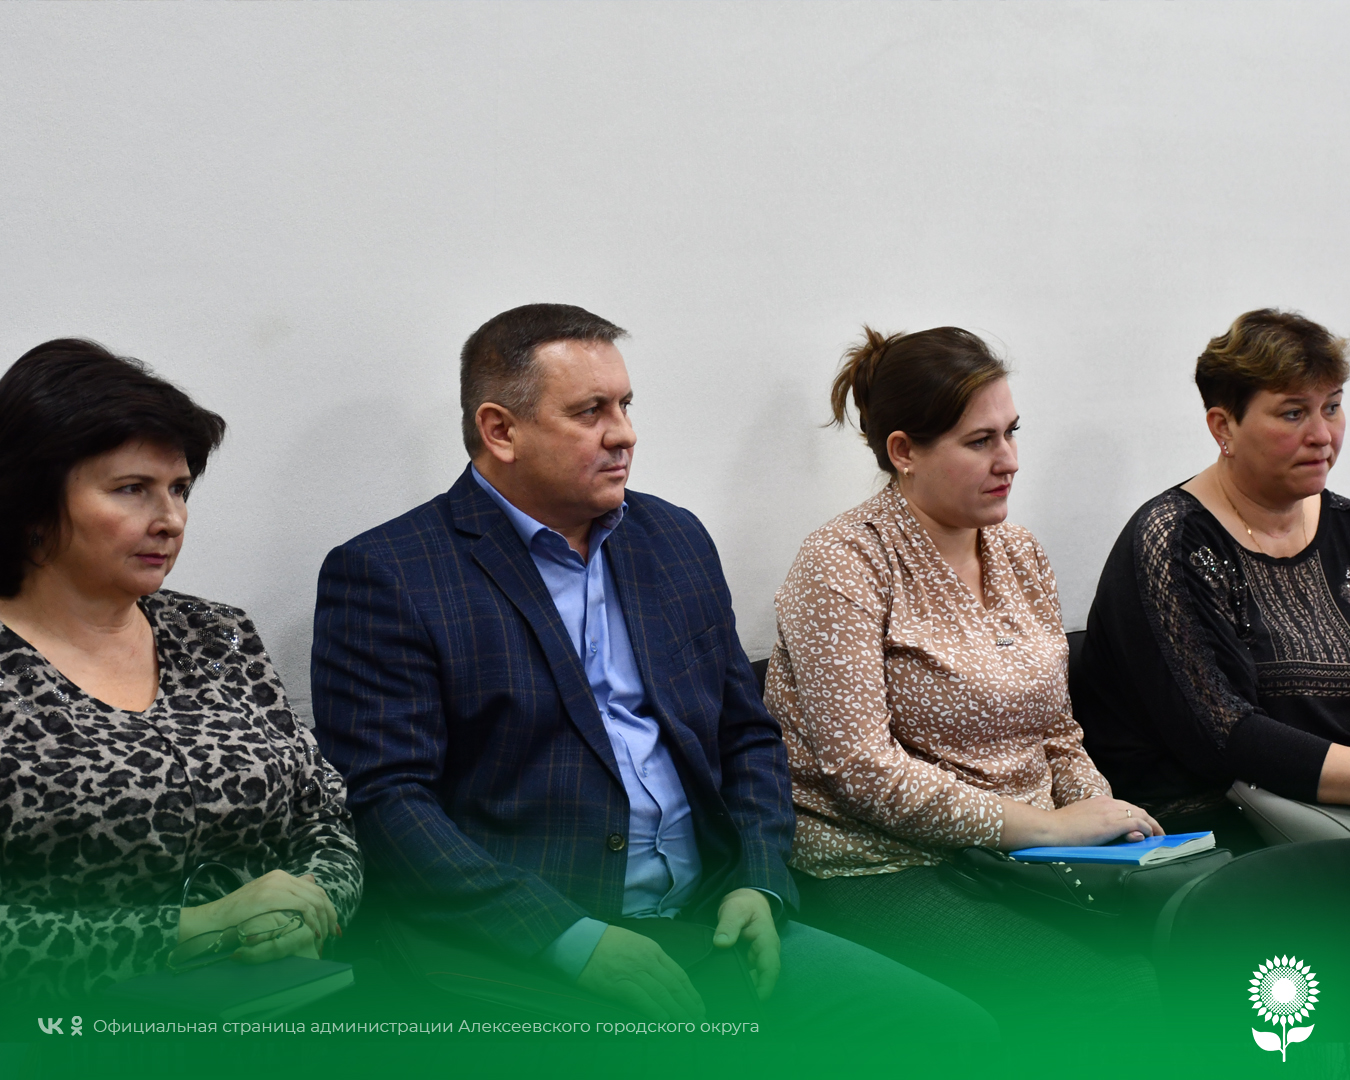 Сегодня в общественной приемной Губернатора Белгородской области в Алексеевском городском округе состоялась встреча с представителями некоммерческих организаций